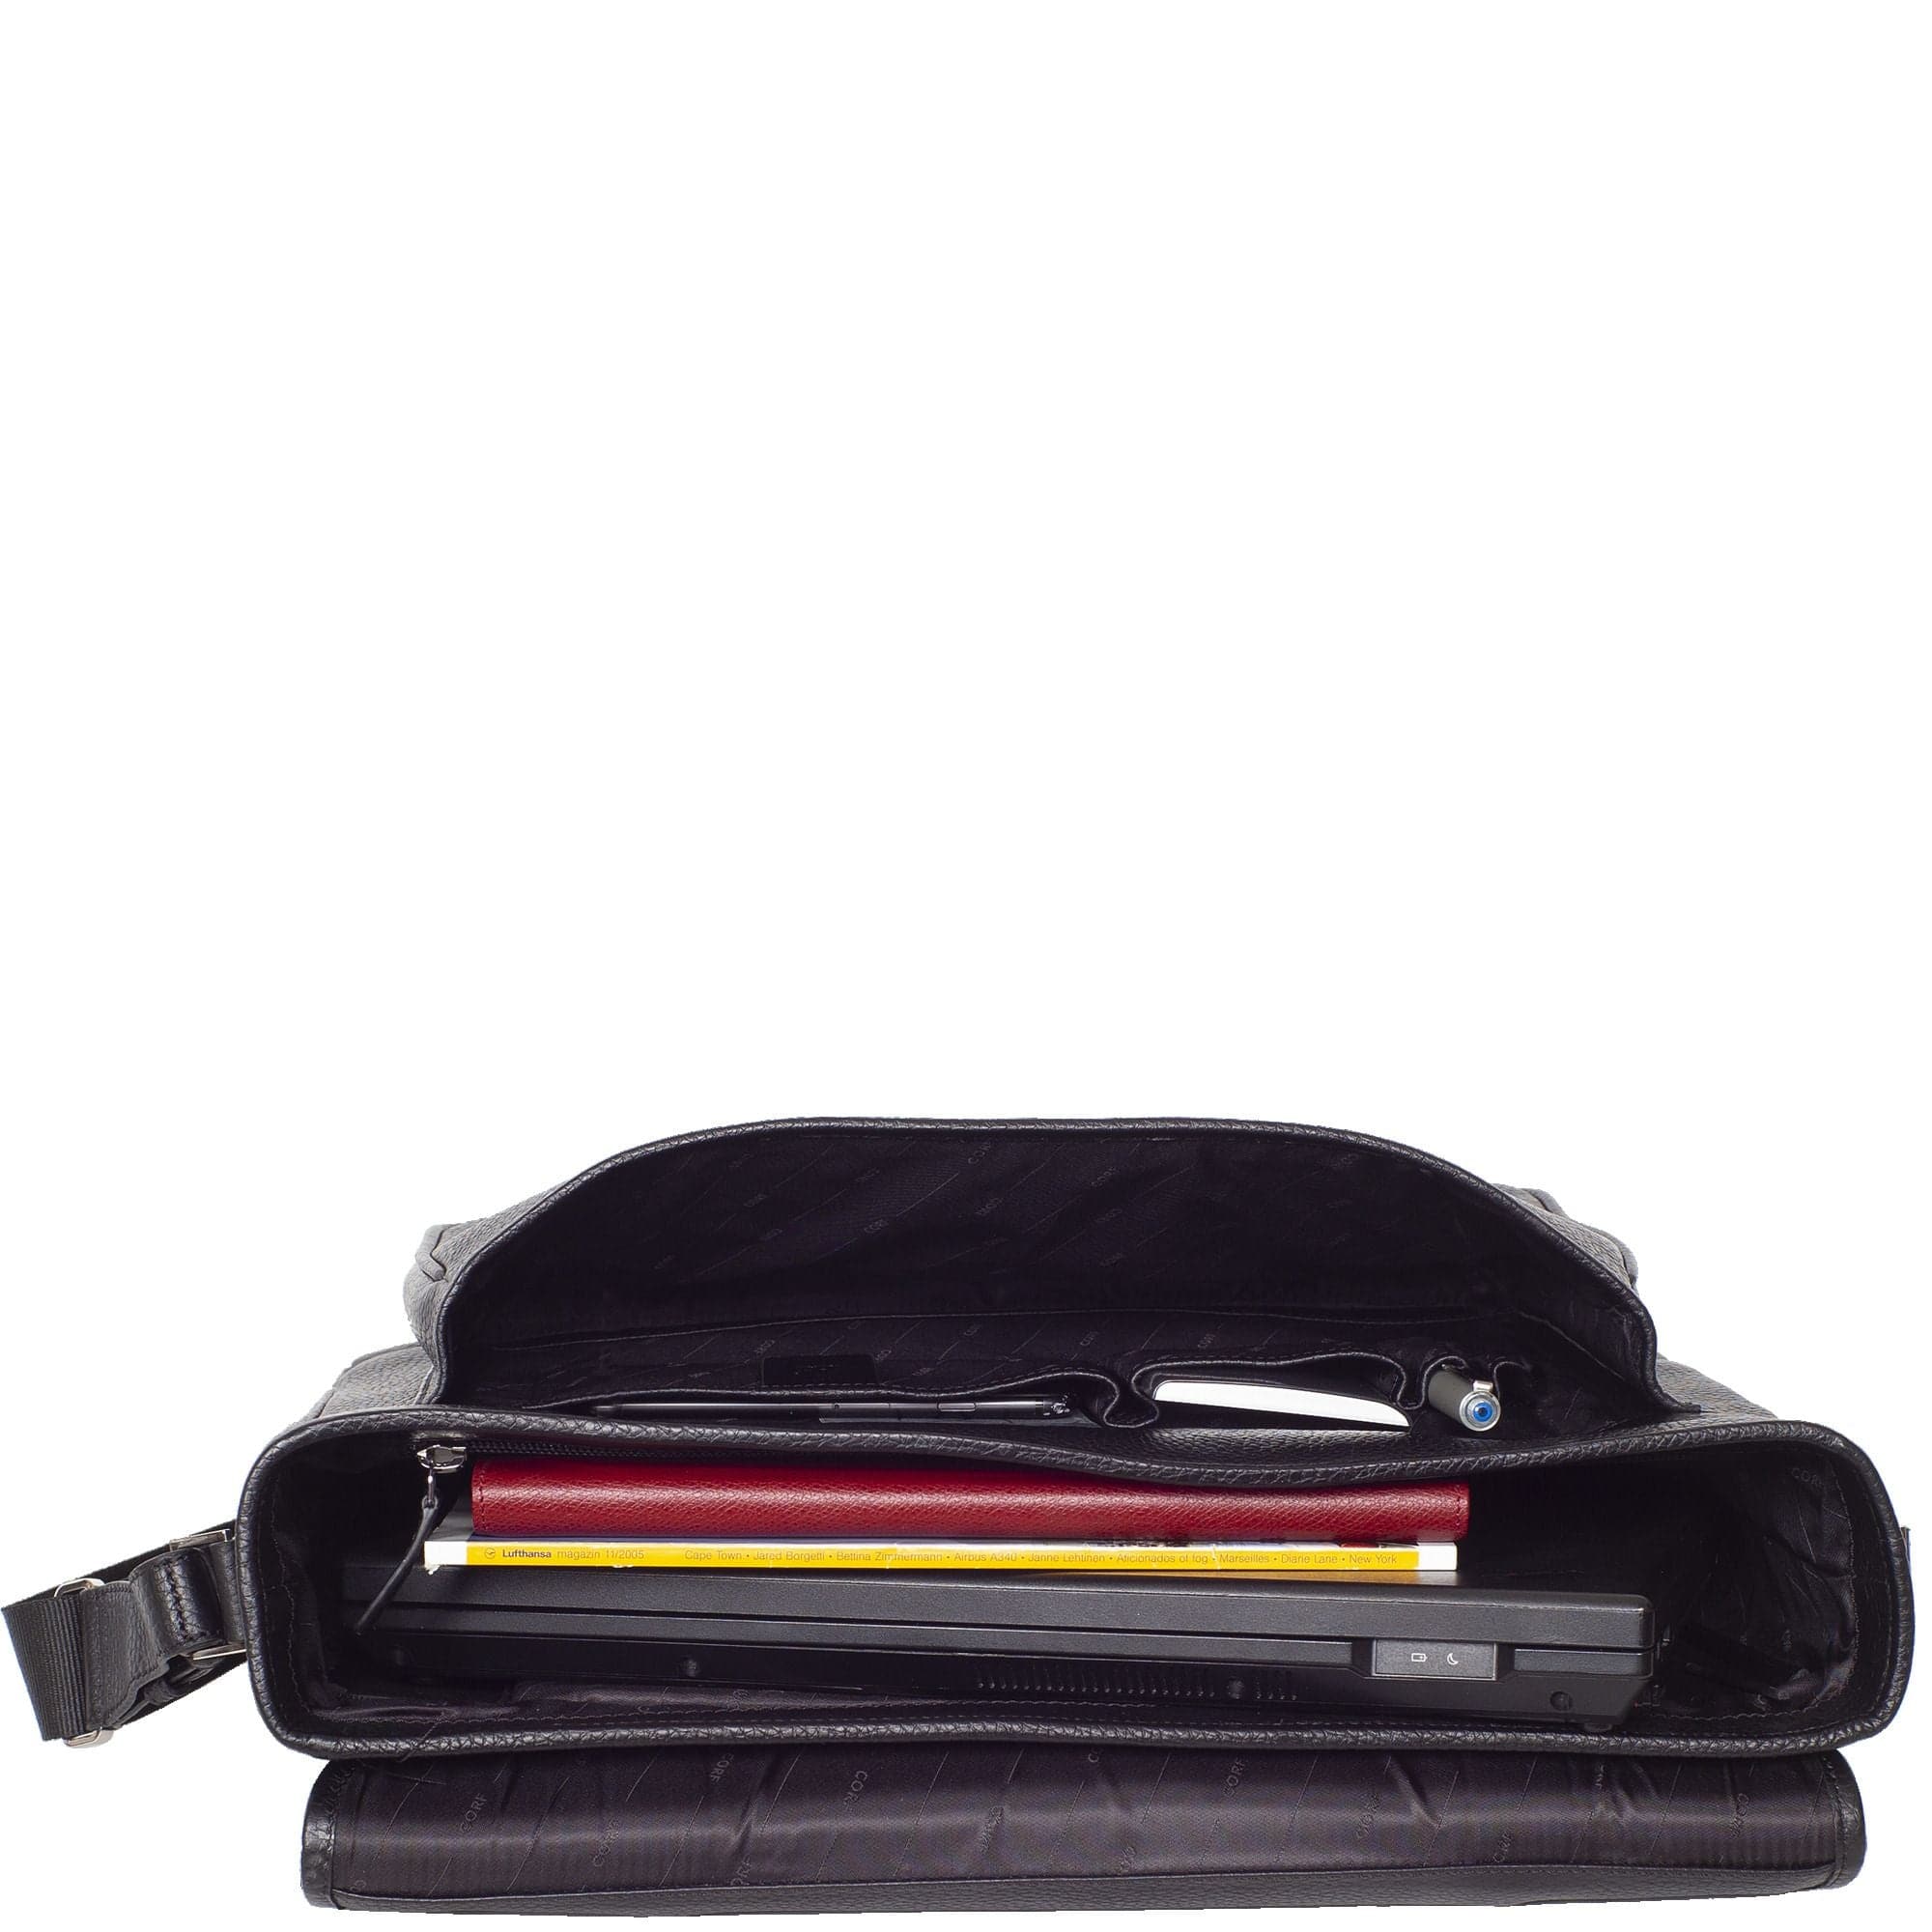 Konferenzmappe Aktentasche Laptoptasche 15 Zoll Leder schwarz mit 2 Steckschlössern